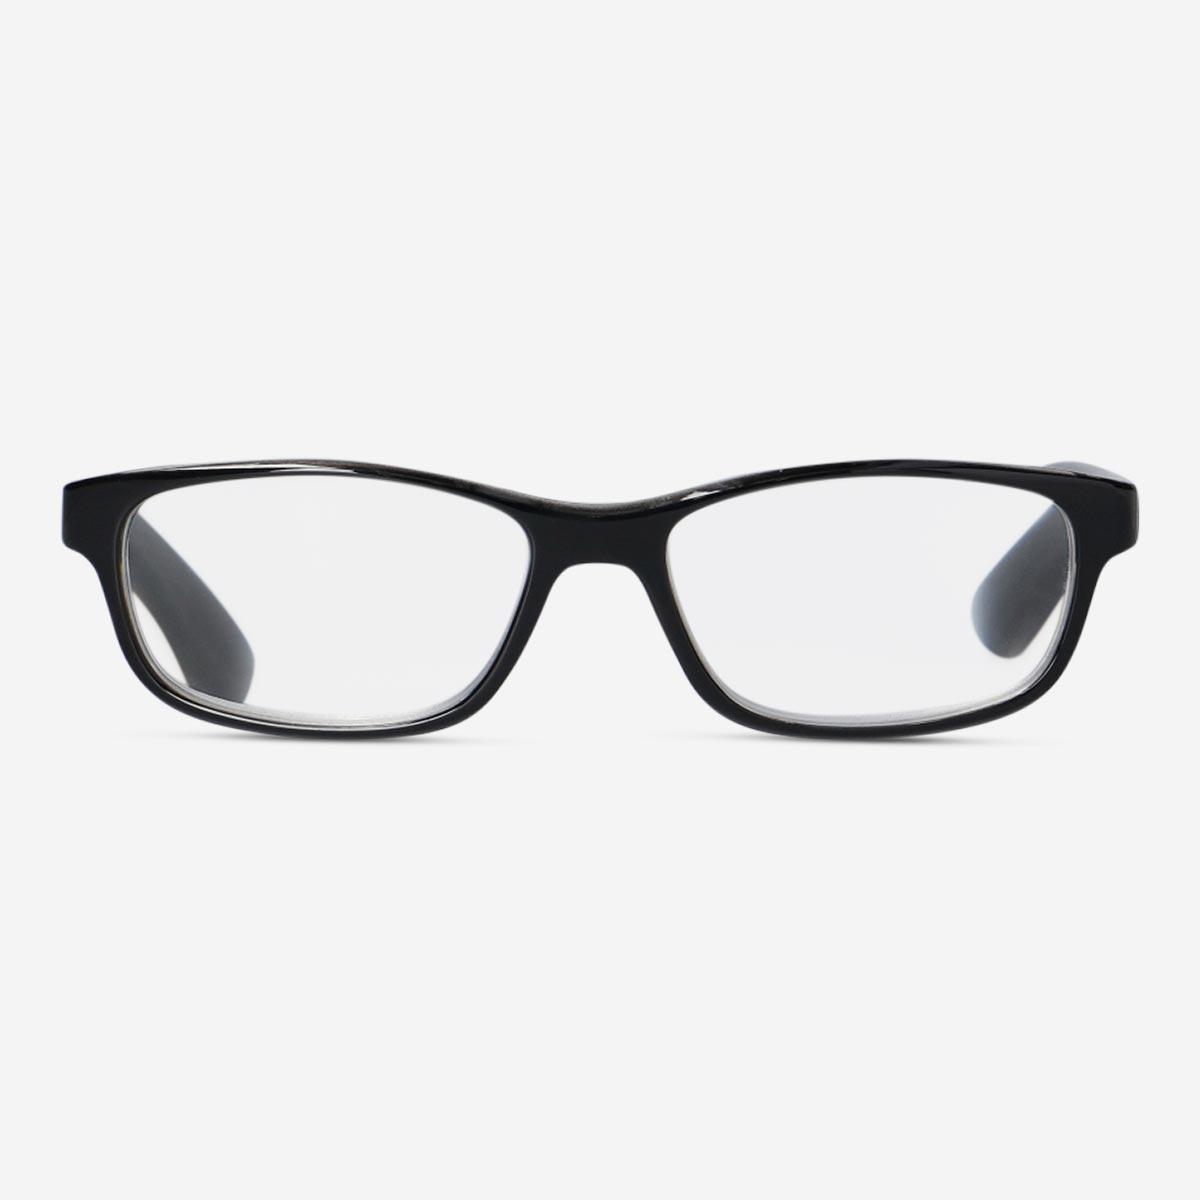 Black reading glasses. + 3.0